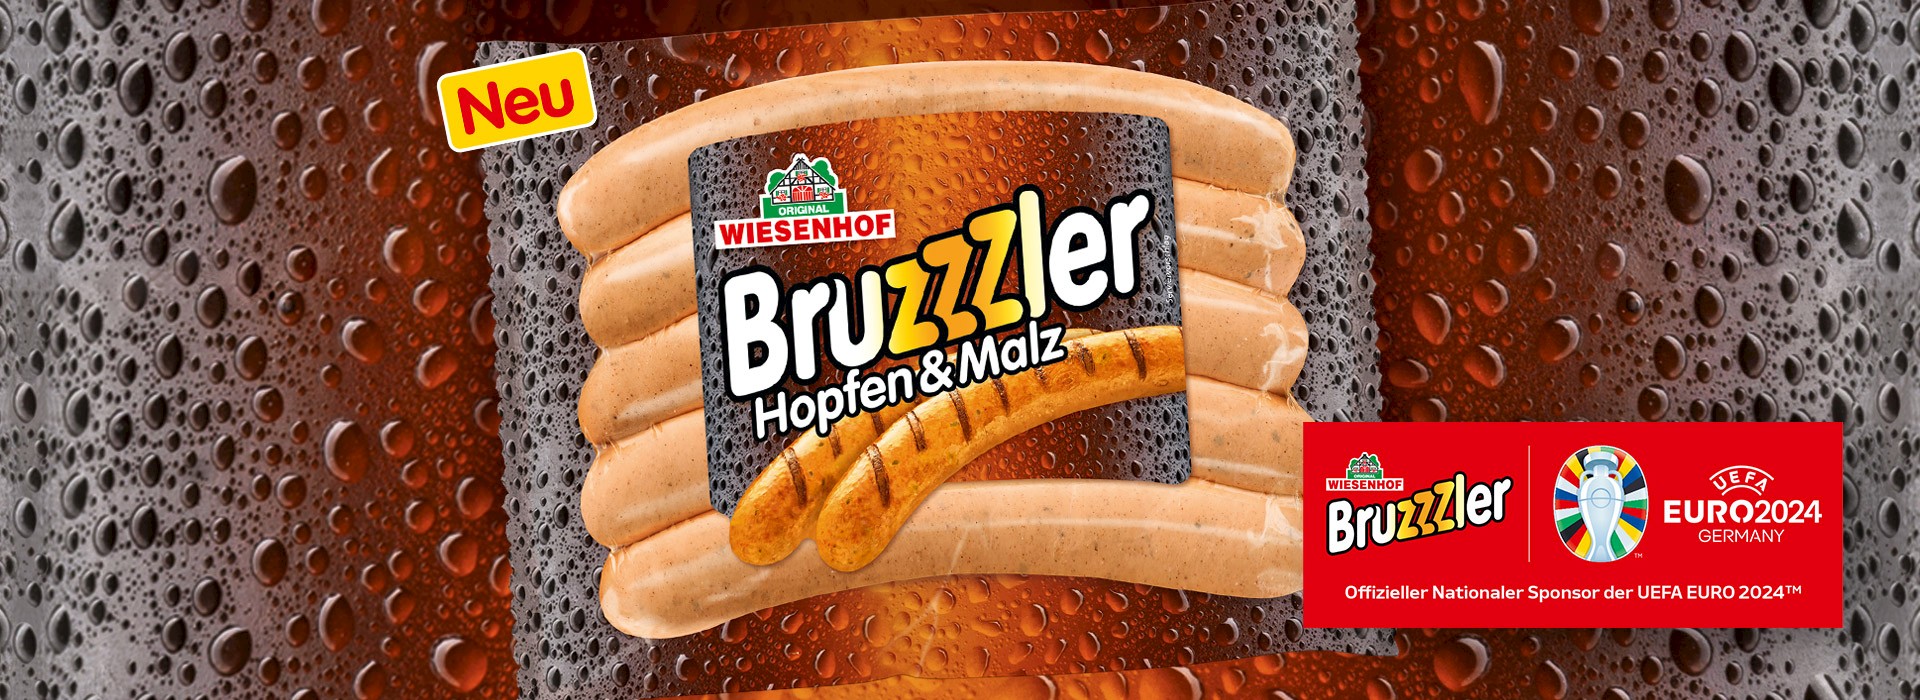 Bruzzzler / Hopfen&Malz neues Produkt